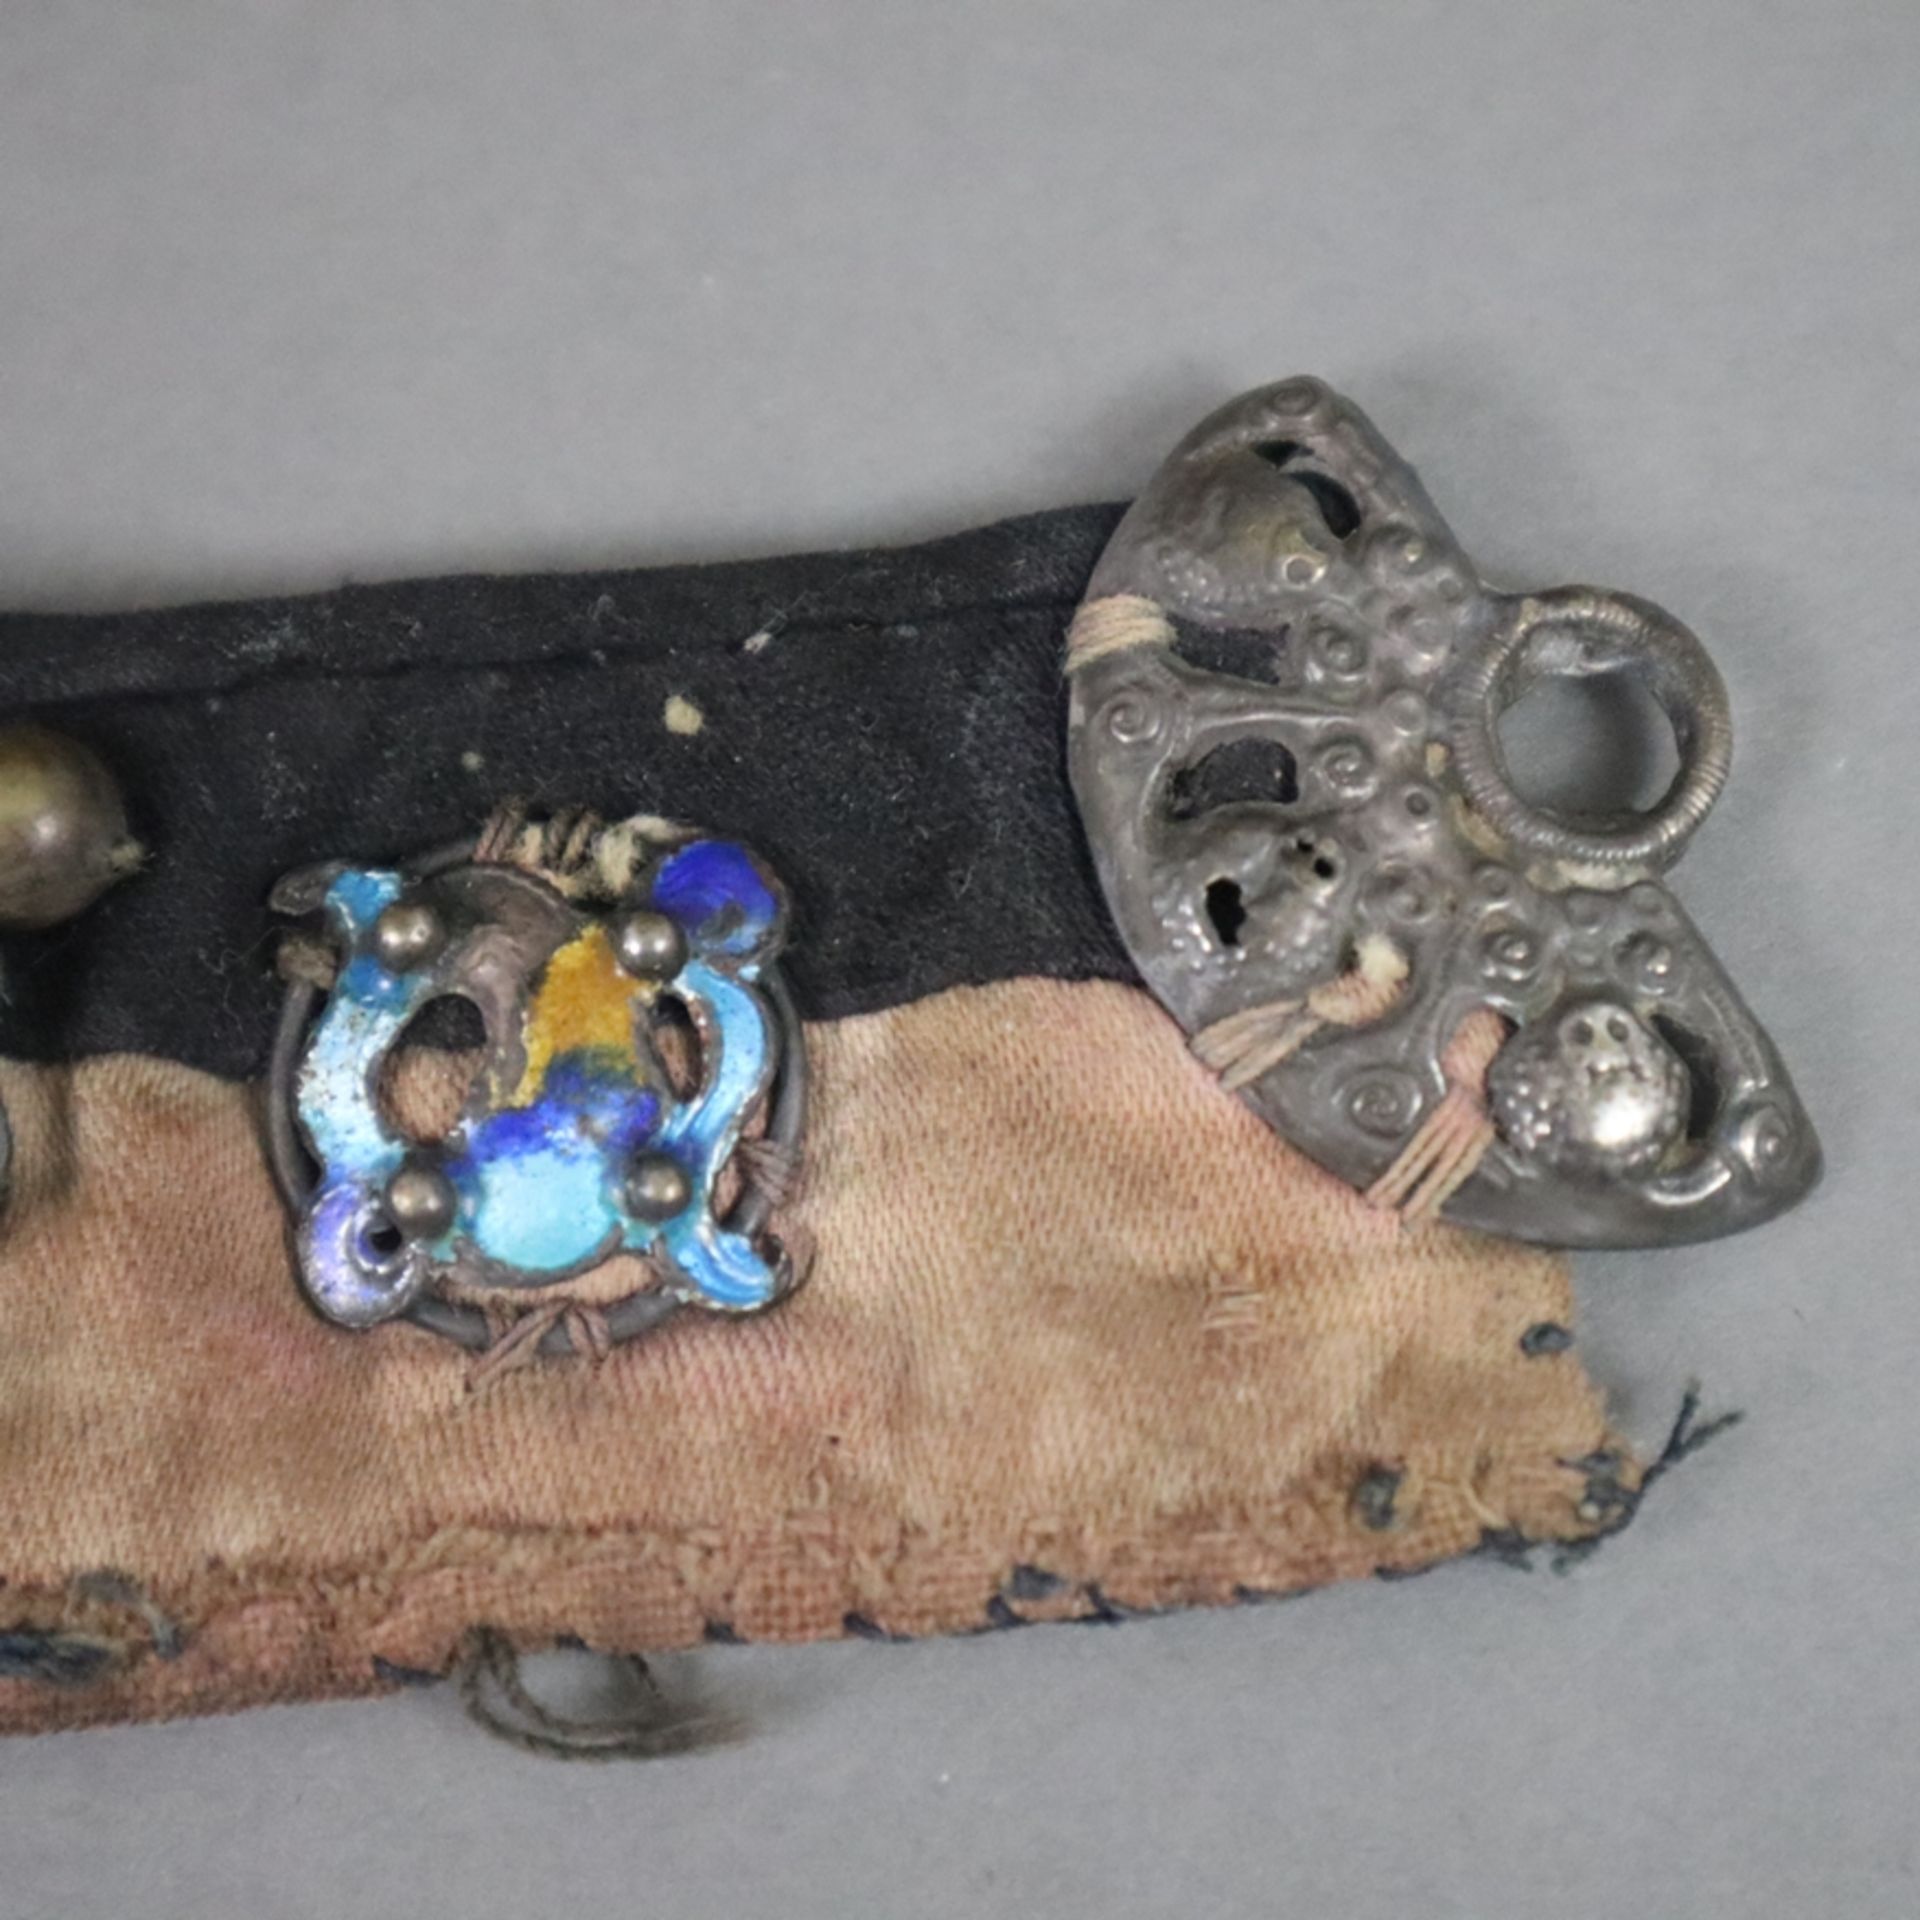 Chinesische Kindermütze und Halsband- China, späte Qing-Dynastie, 19.Jh., Baumwollstoff sowie Seide - Image 11 of 12